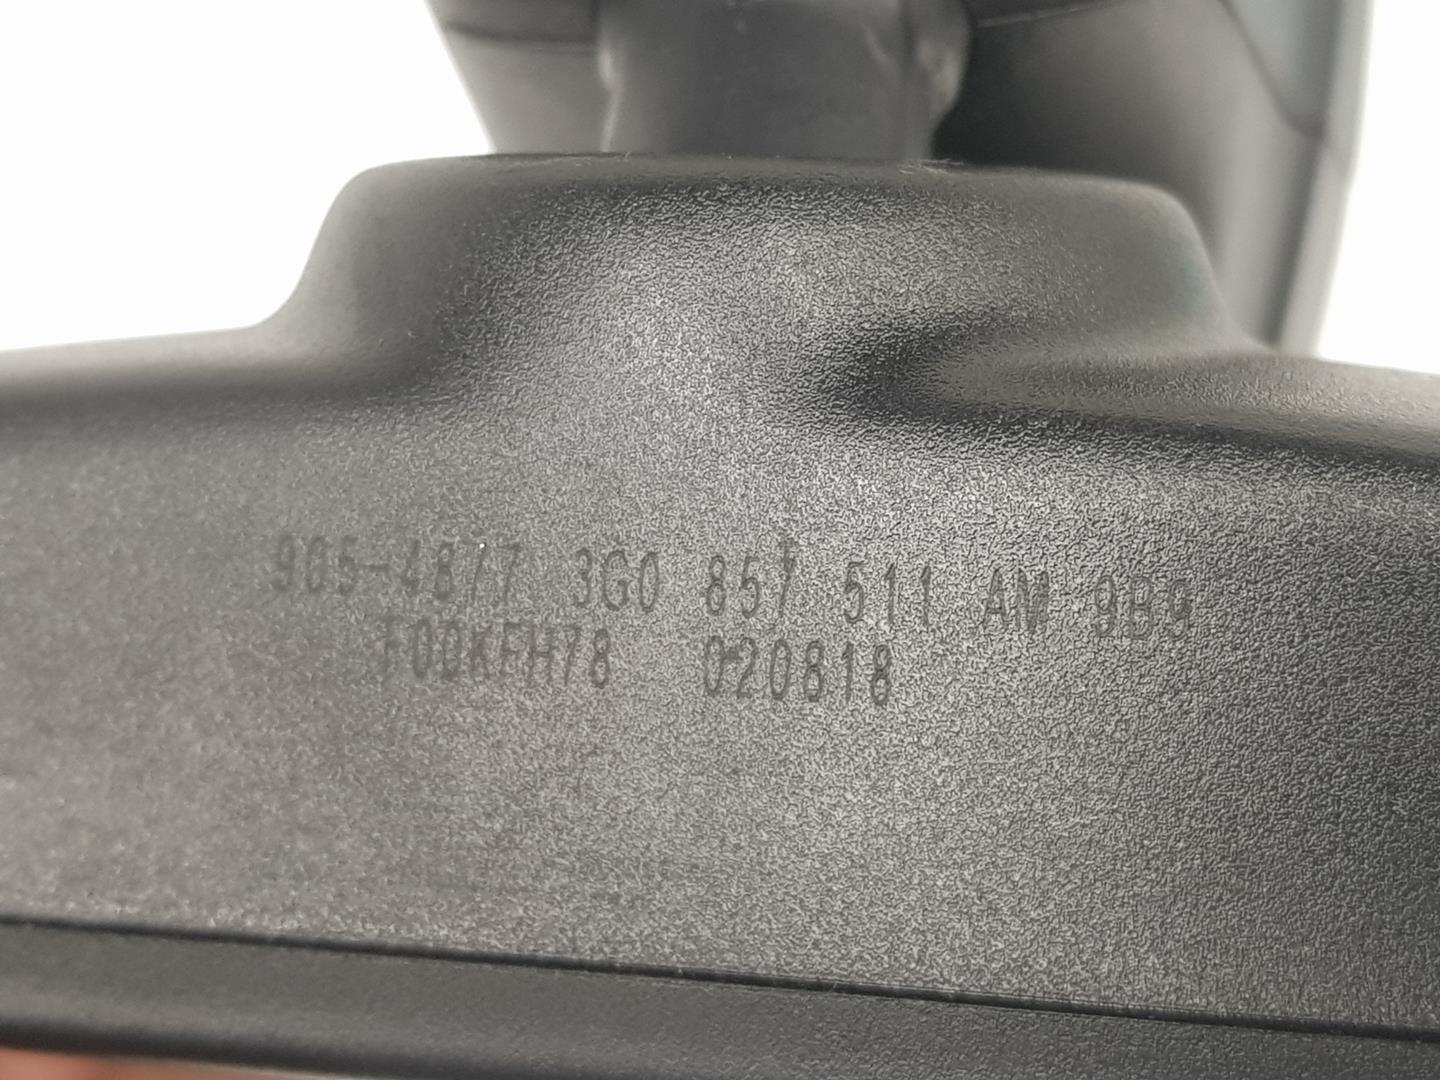 VOLKSWAGEN Caddy 4 generation (2015-2020) Interior Rear View Mirror 3G0857511AM, 3G0857511AM 24213769